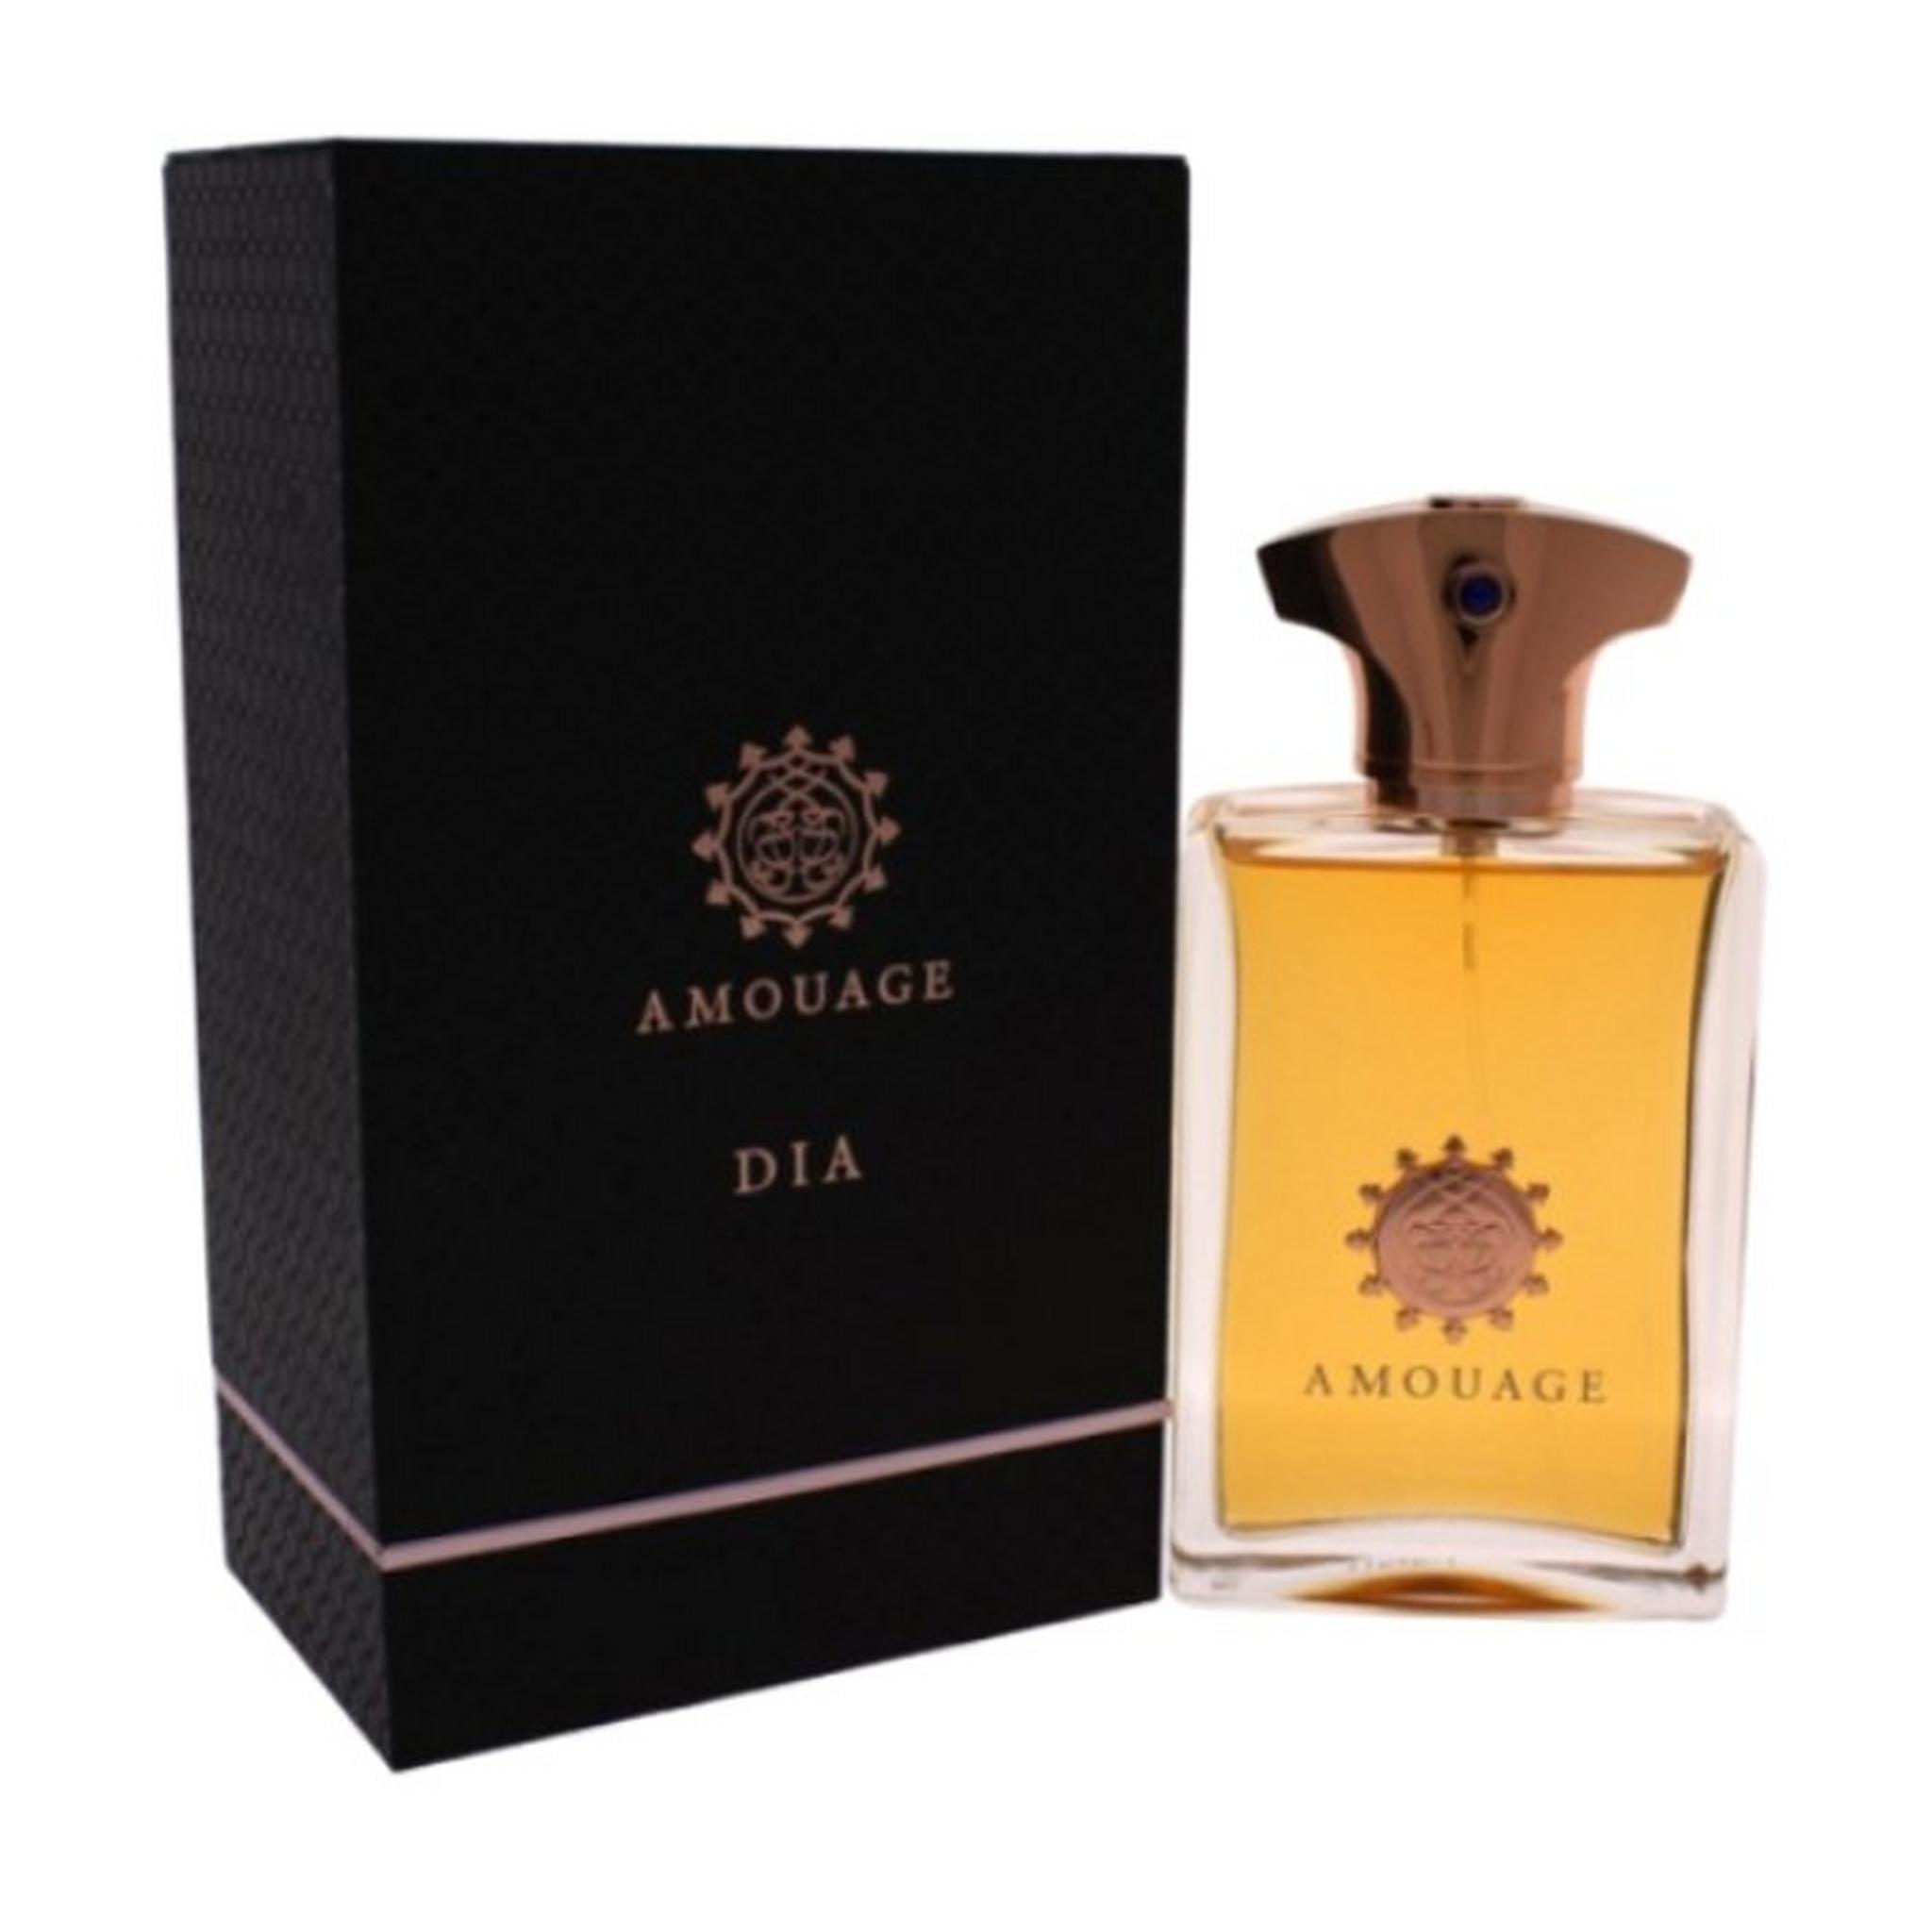 Dia by Amouage for Men 100 ML. Eau de Parfum